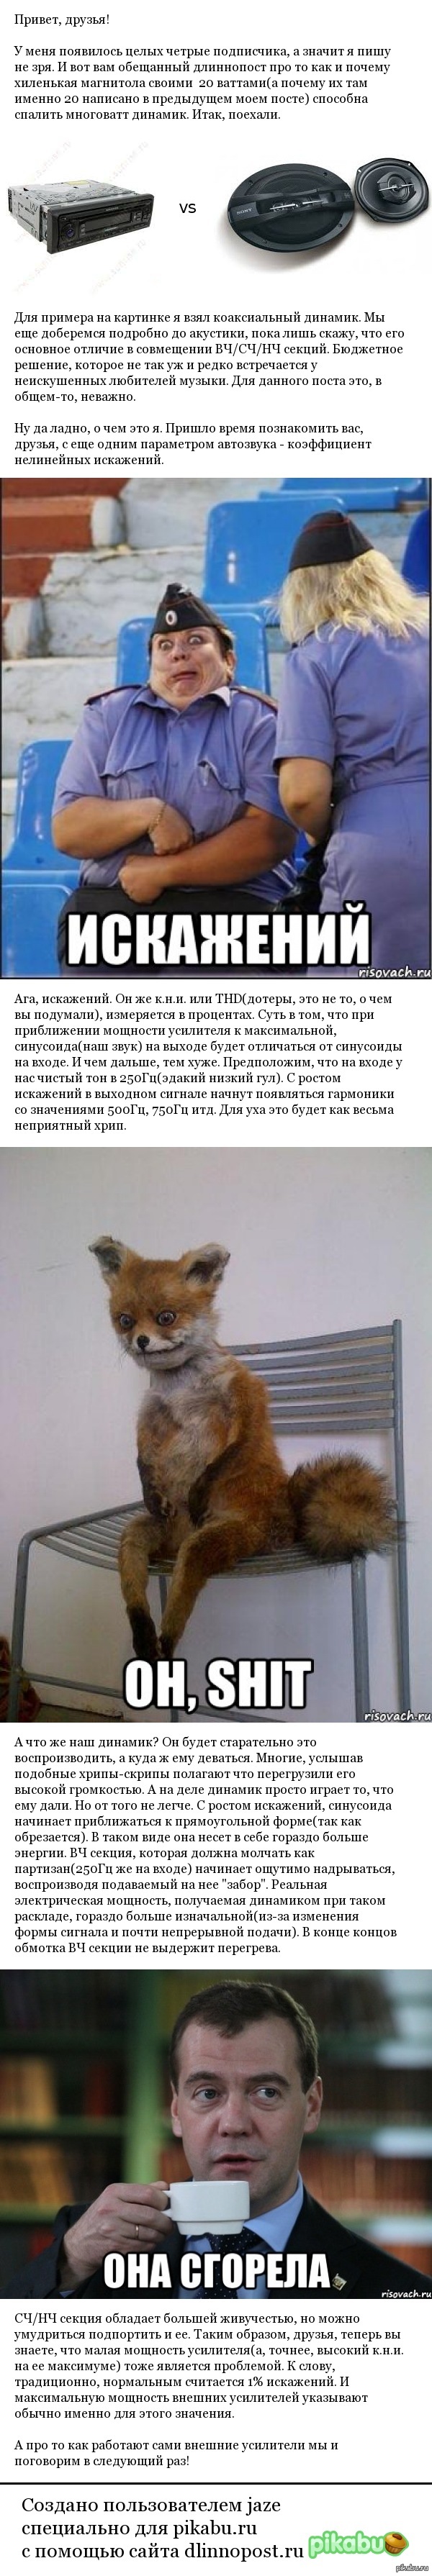                  <a href="http://pikabu.ru/story/kak_ustroen_usilitel_avtomagnitolyi_2530717">http://pikabu.ru/story/_2530717</a>